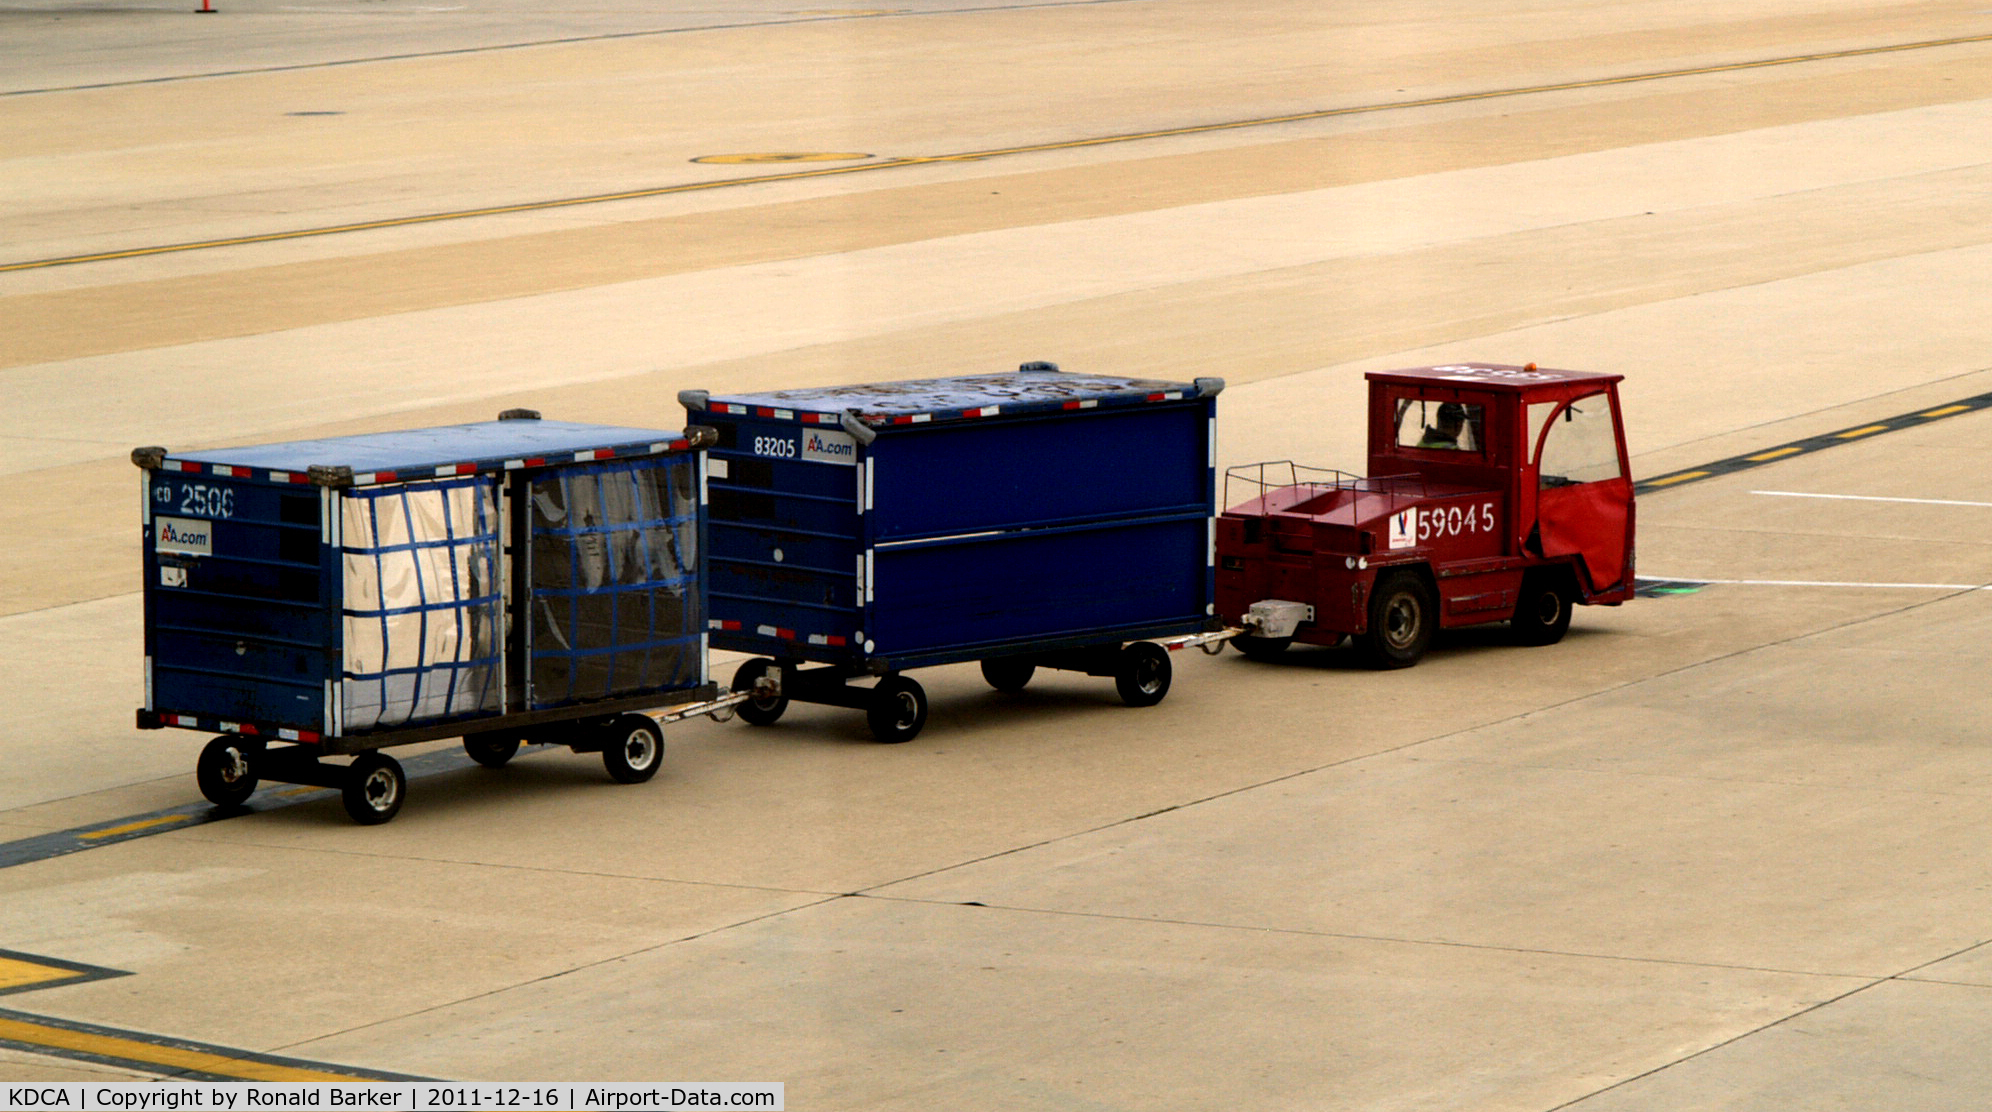 Ronald Reagan Washington National Airport (DCA) - Tug 59045 with two baggage carts